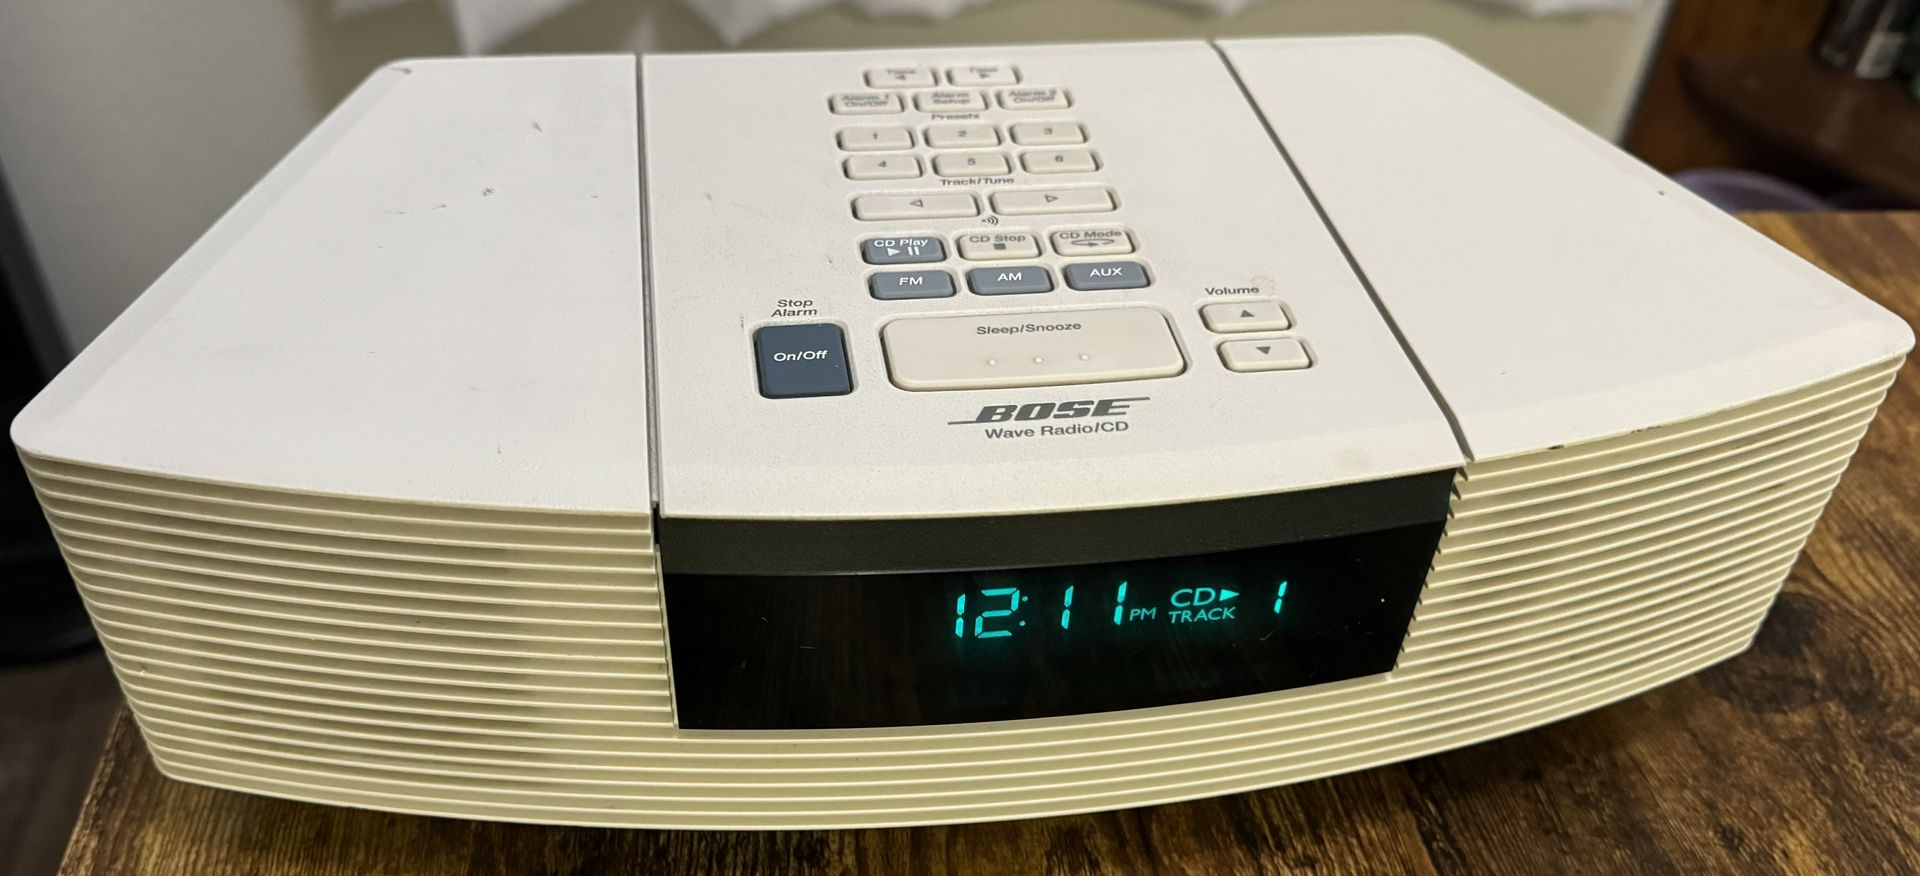 Bose Wave Radio/Cd Player 